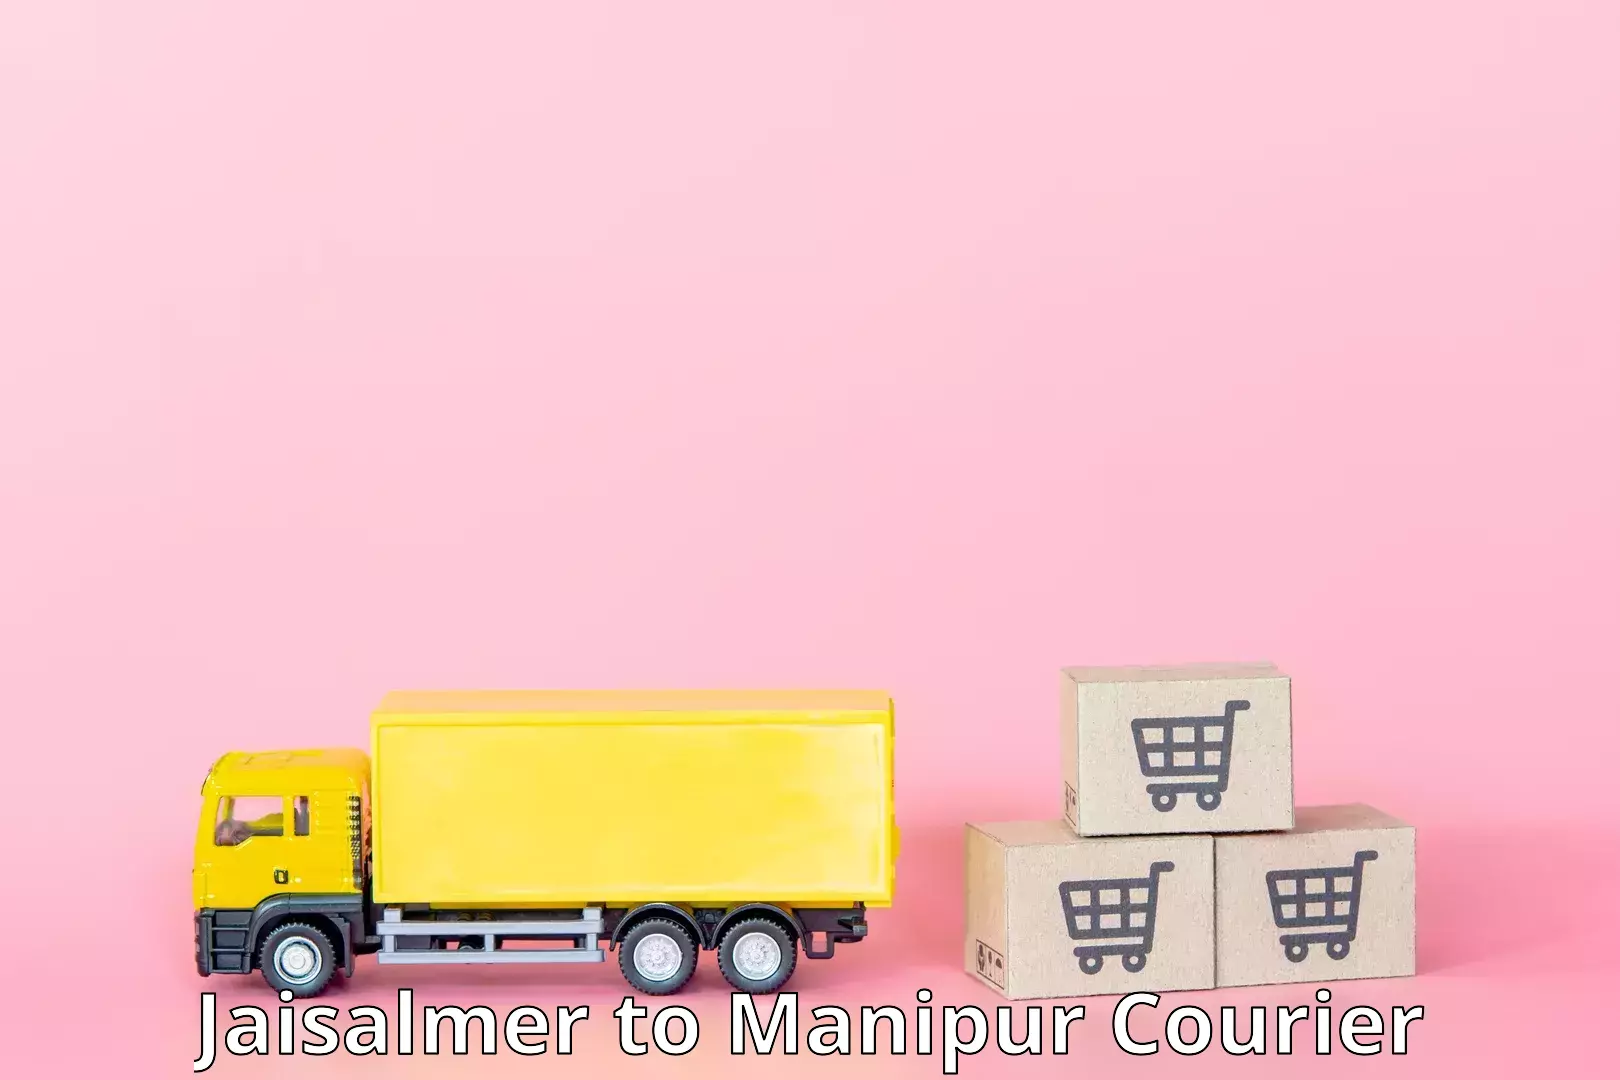 High-priority parcel service Jaisalmer to Churachandpur